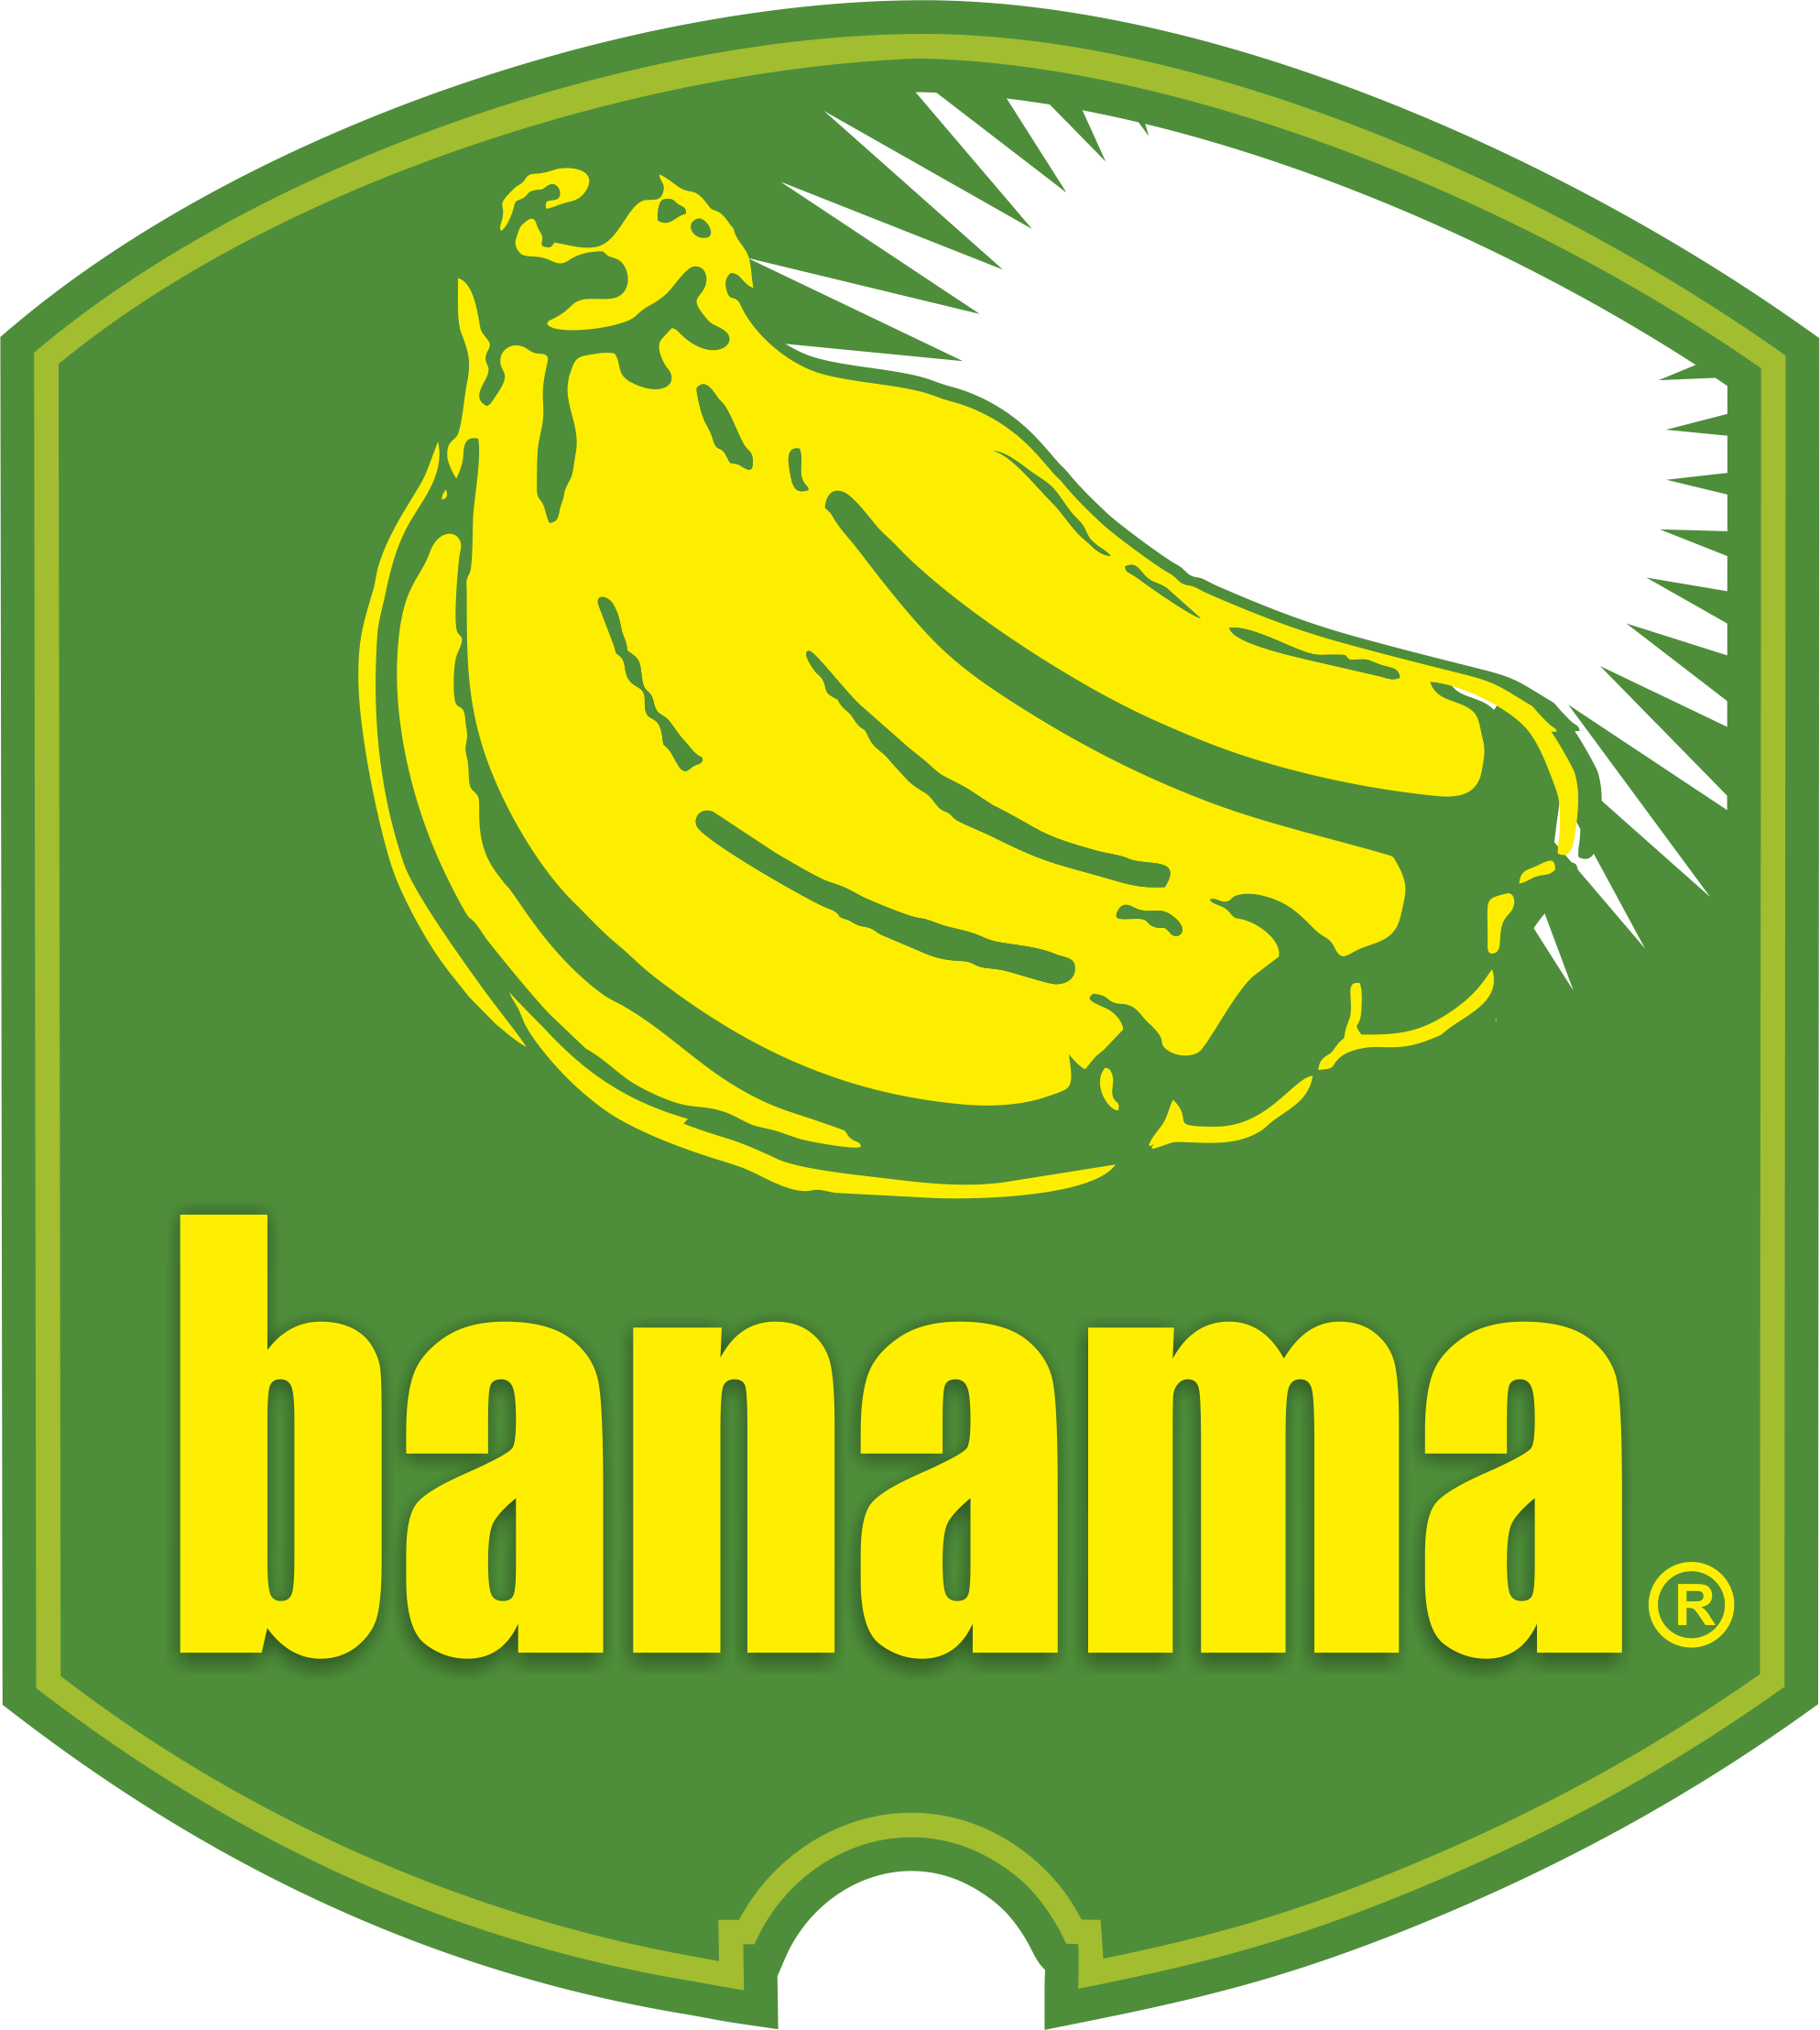 Banama Dominicana